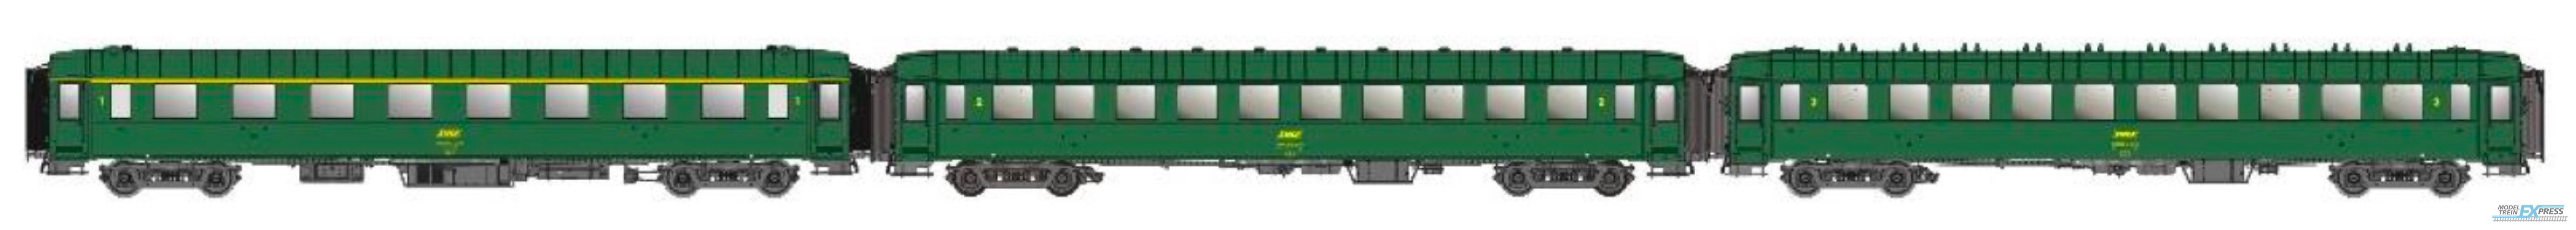 LS Models 40943 OCEM, groen, A8 + B10 + B10, onderstel grijs, dak en uiteinden groen, / Ep. IVA / SNCF / HO / DC / 3 P.